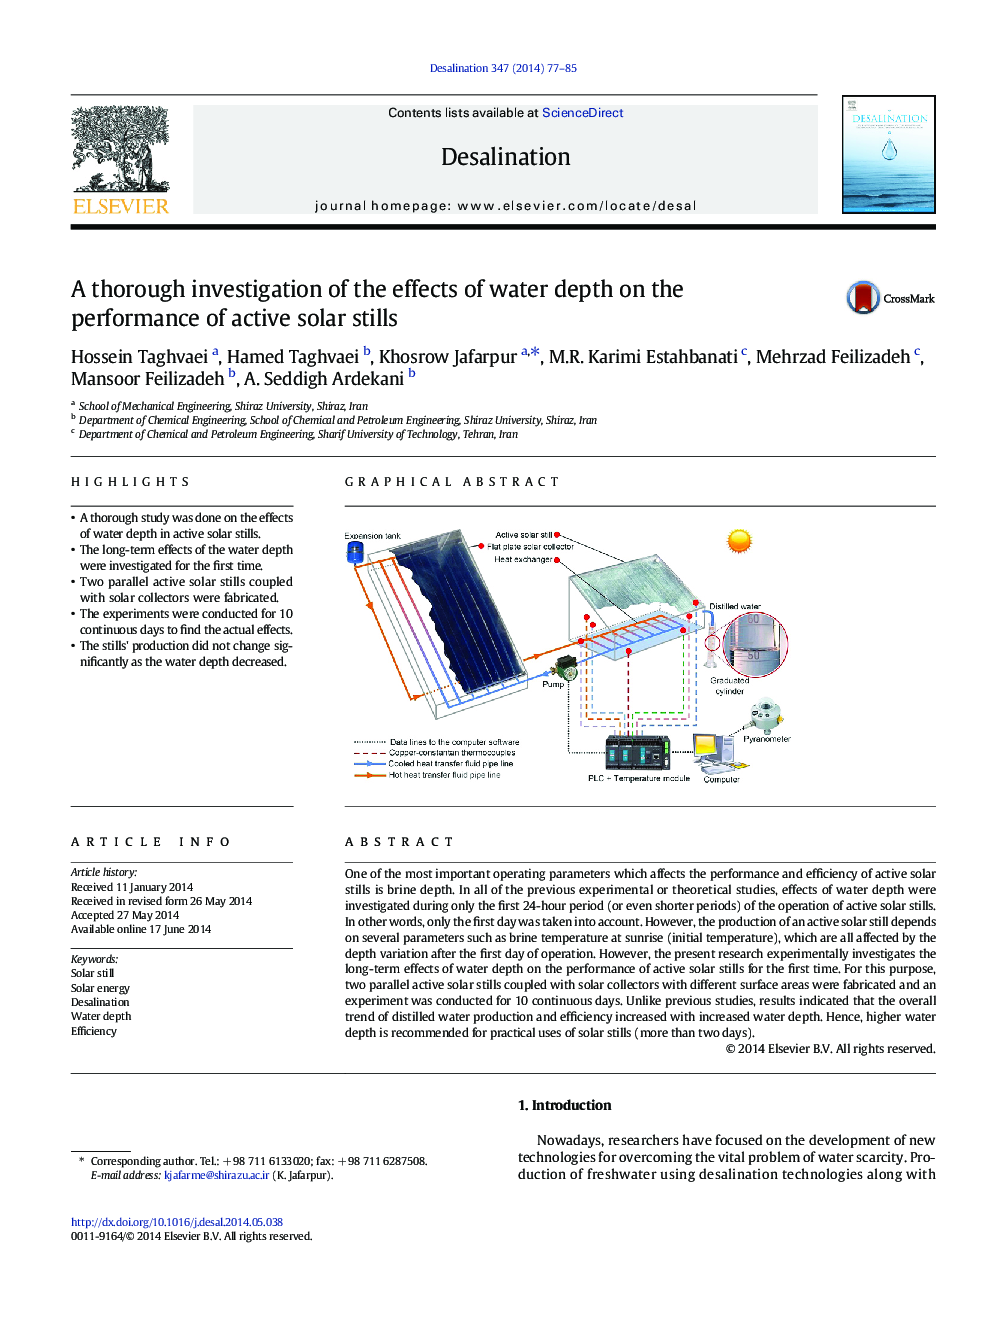 یک بررسی کامل از اثرات عمق آب بر عملکرد عناصر فعال خورشیدی 